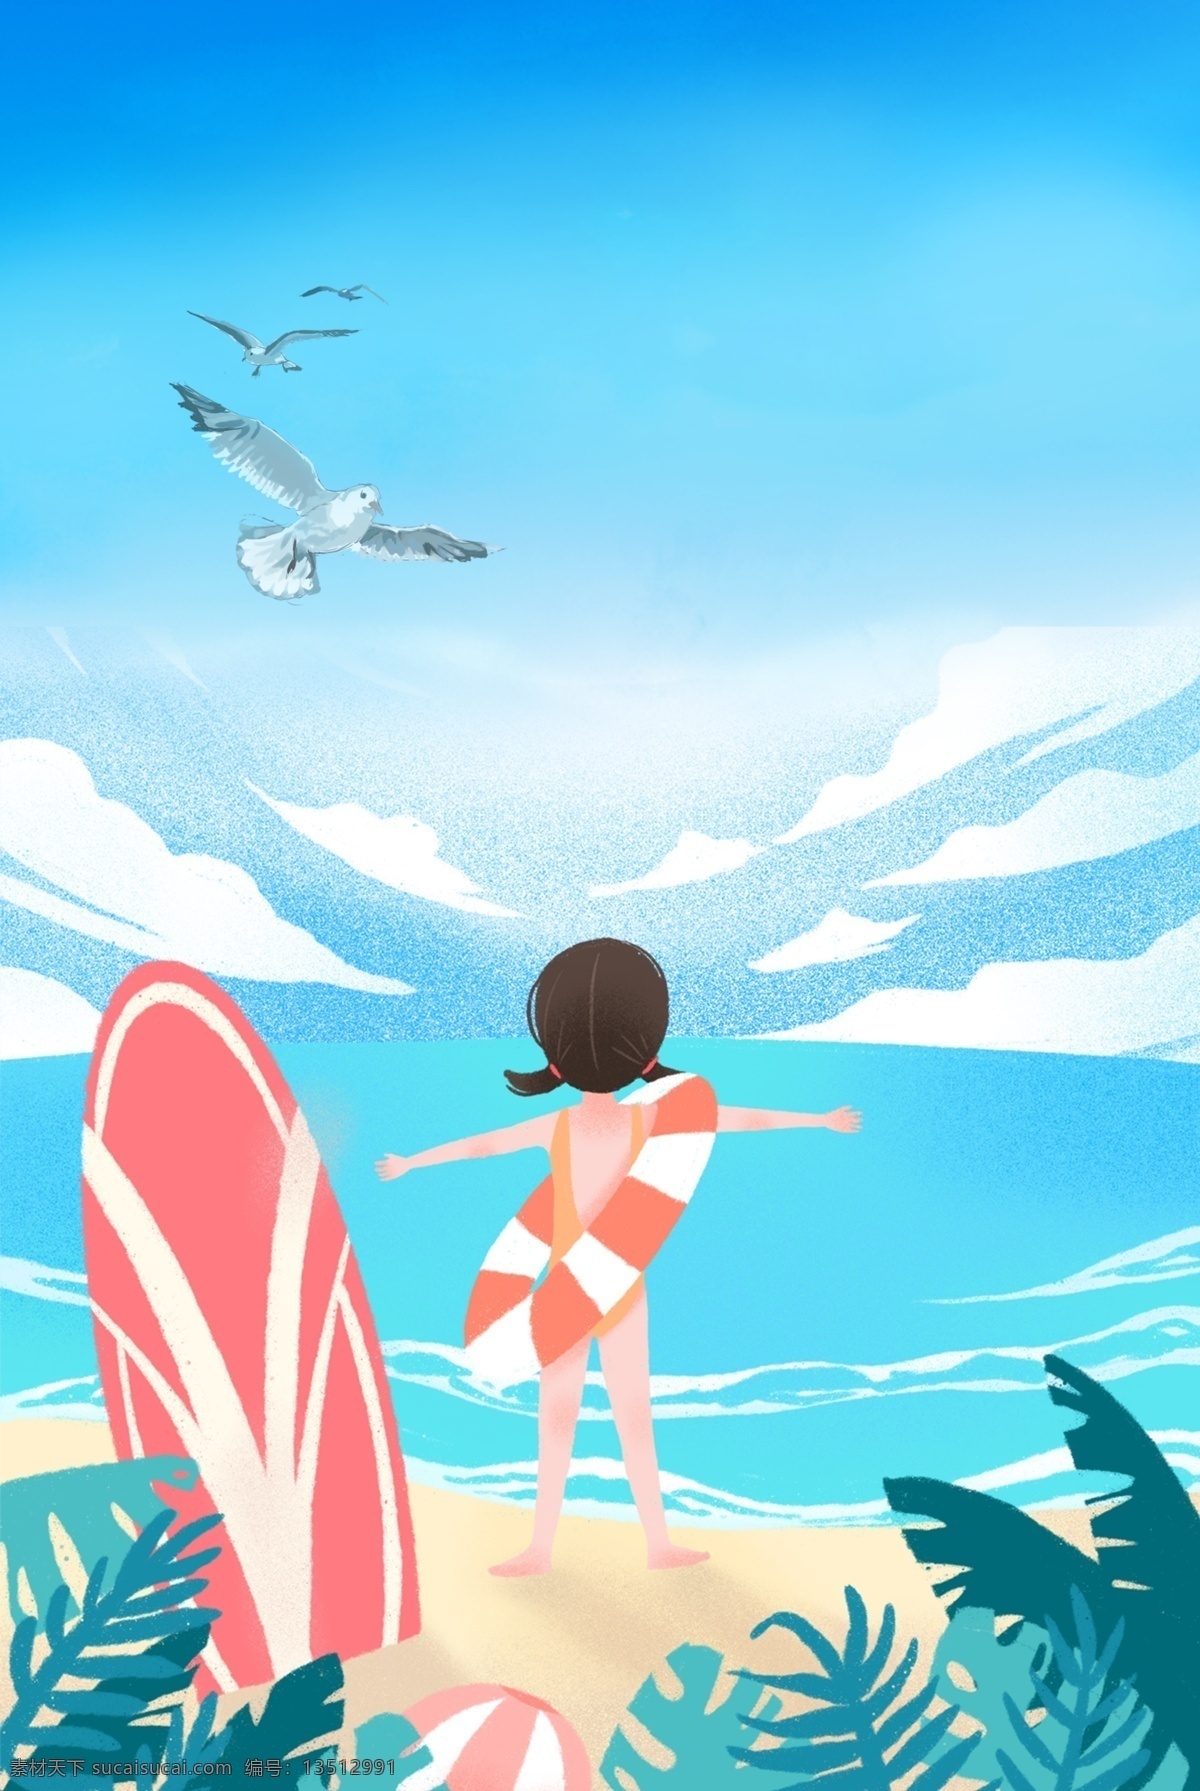 清新 夏天 海水 海鸥 背景 游泳 滑板 清凉 凉爽